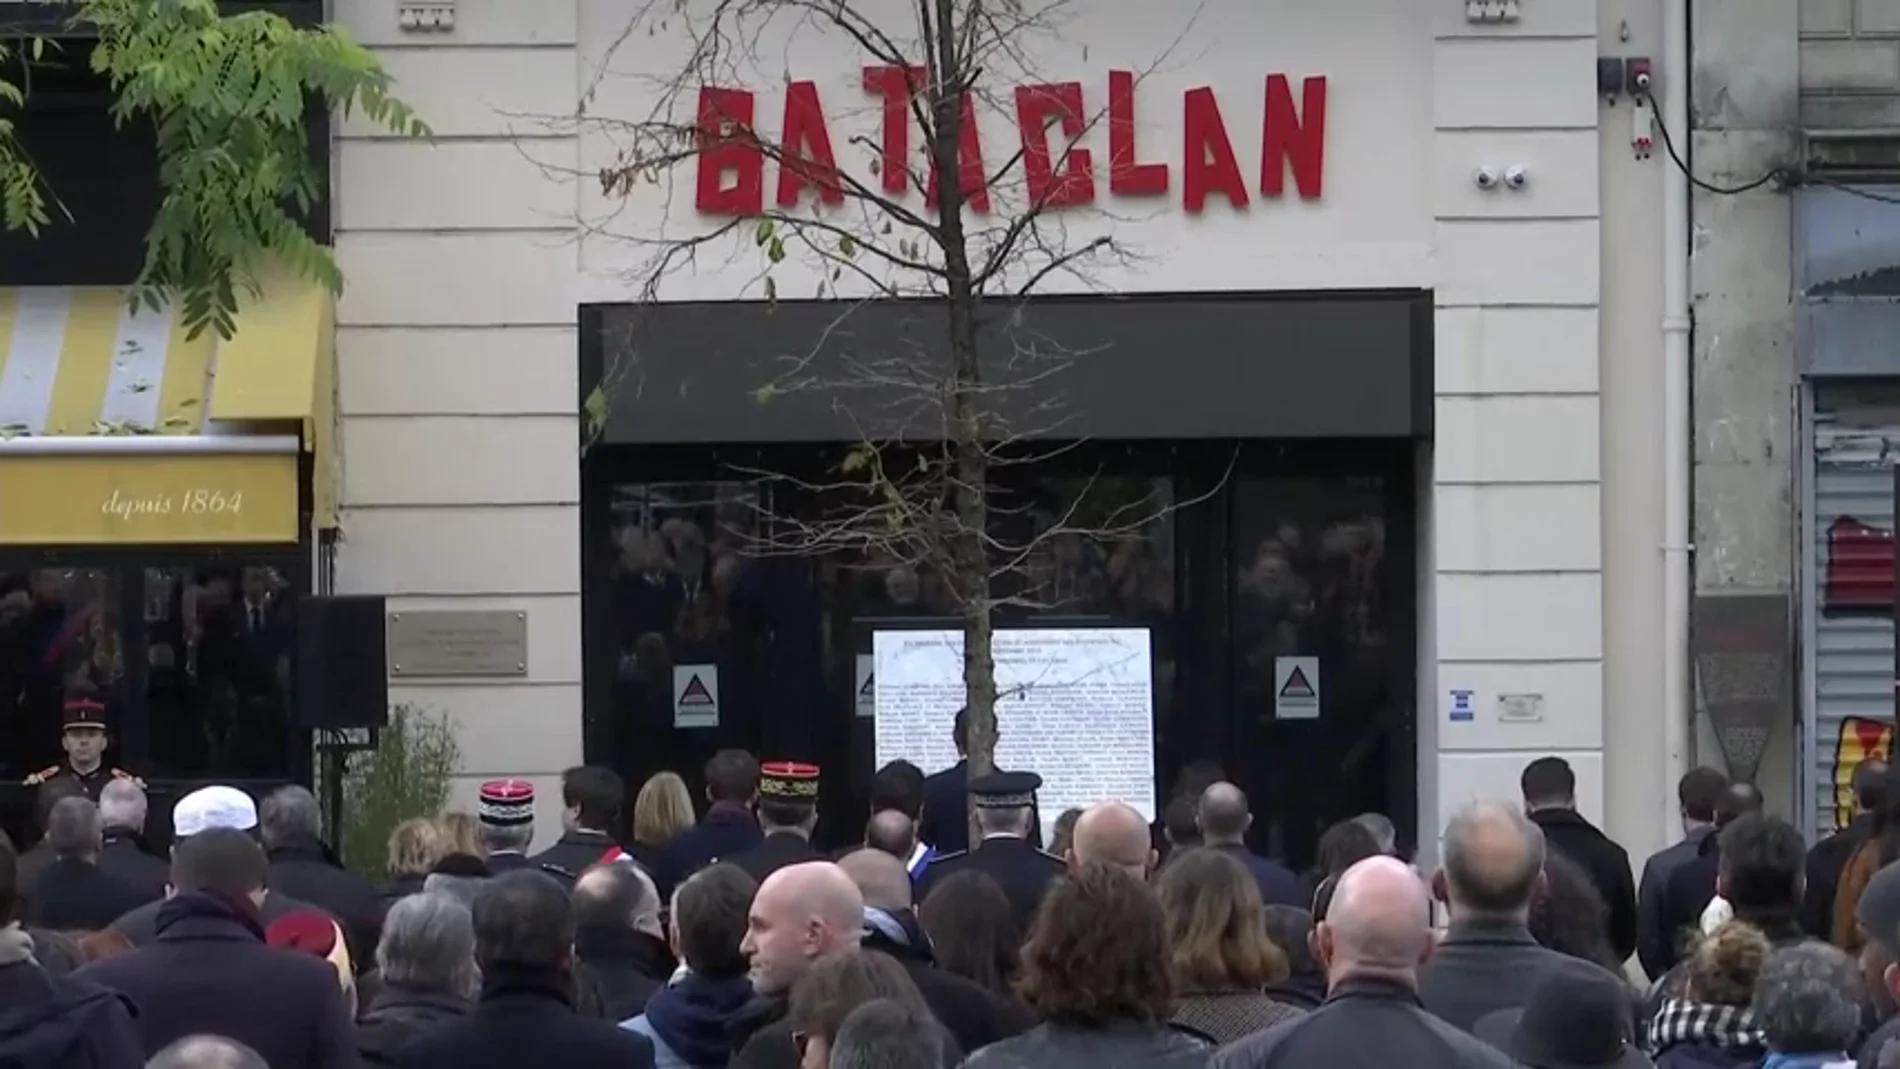 Homenaje nacional a las víctimas de Bataclan en París y Saint-Denis